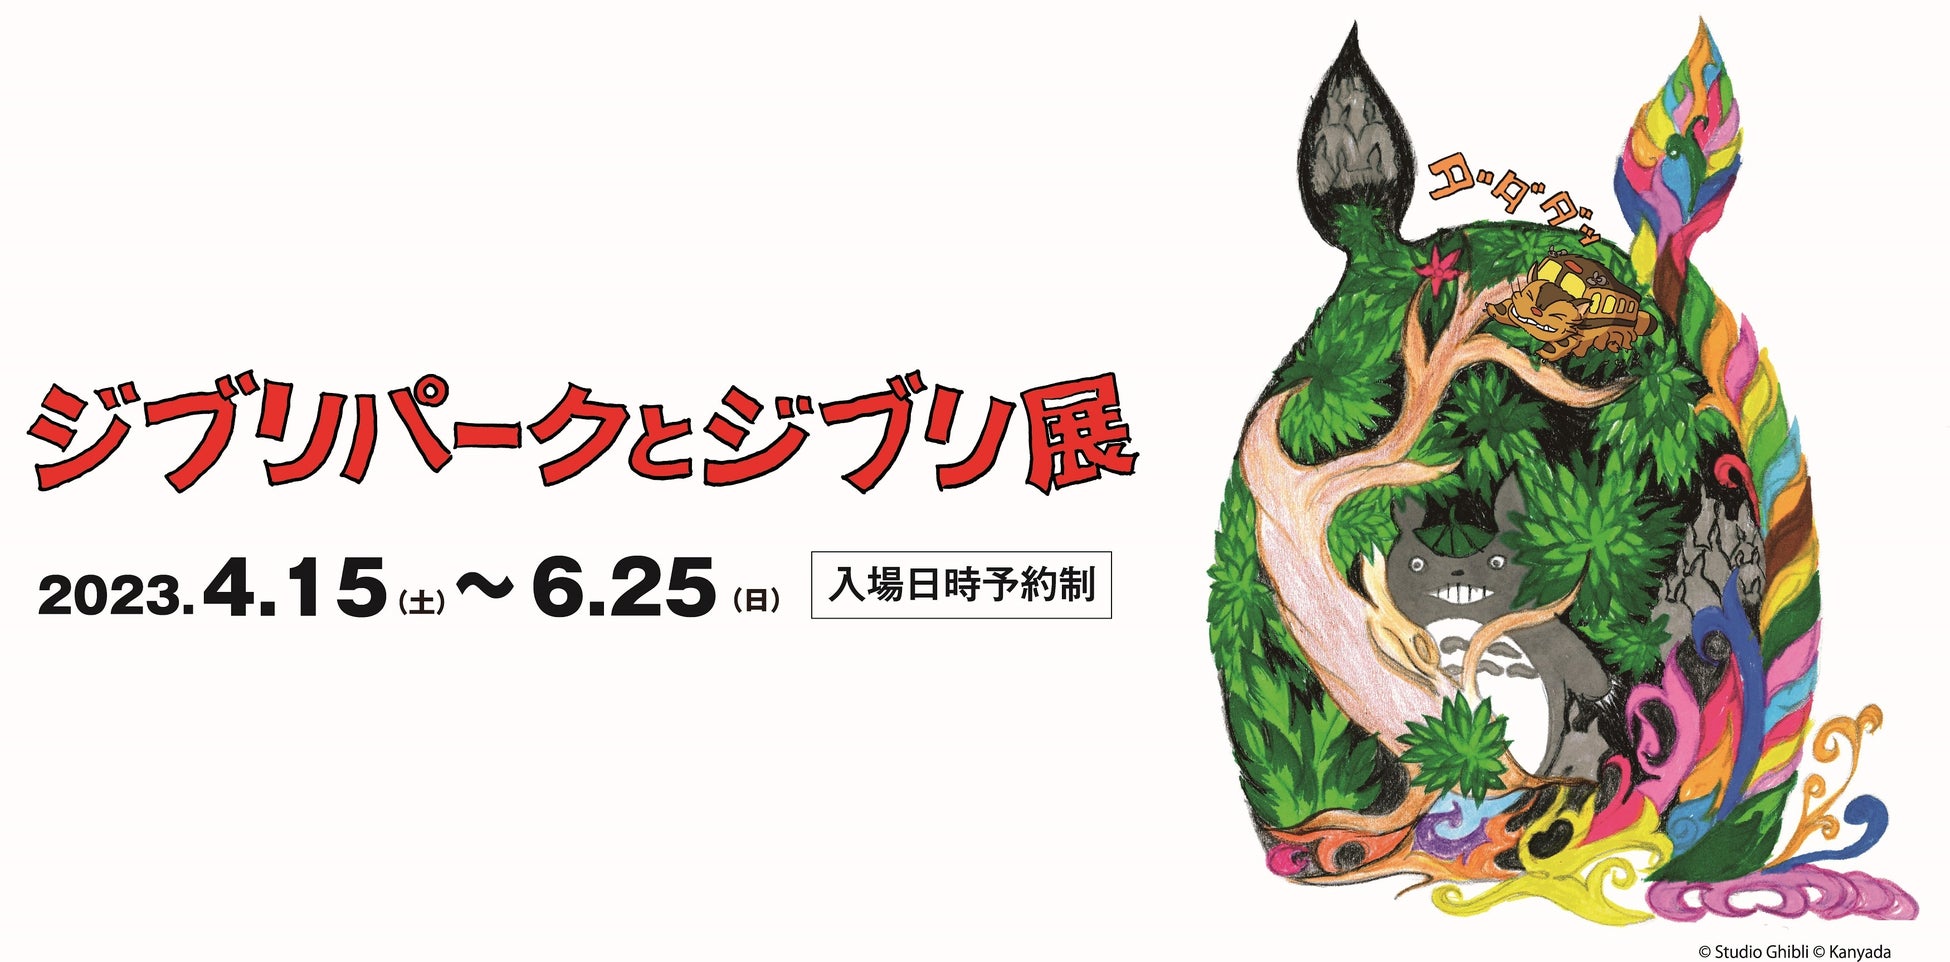 ジブリの世界に思いを馳せる、タイアップドリンクが3種登場！神戸市立博物館にて4月15日(土)から開催の特別展「ジブリパークとジブリ展」とTOOTH TOOTHがタイアップ！